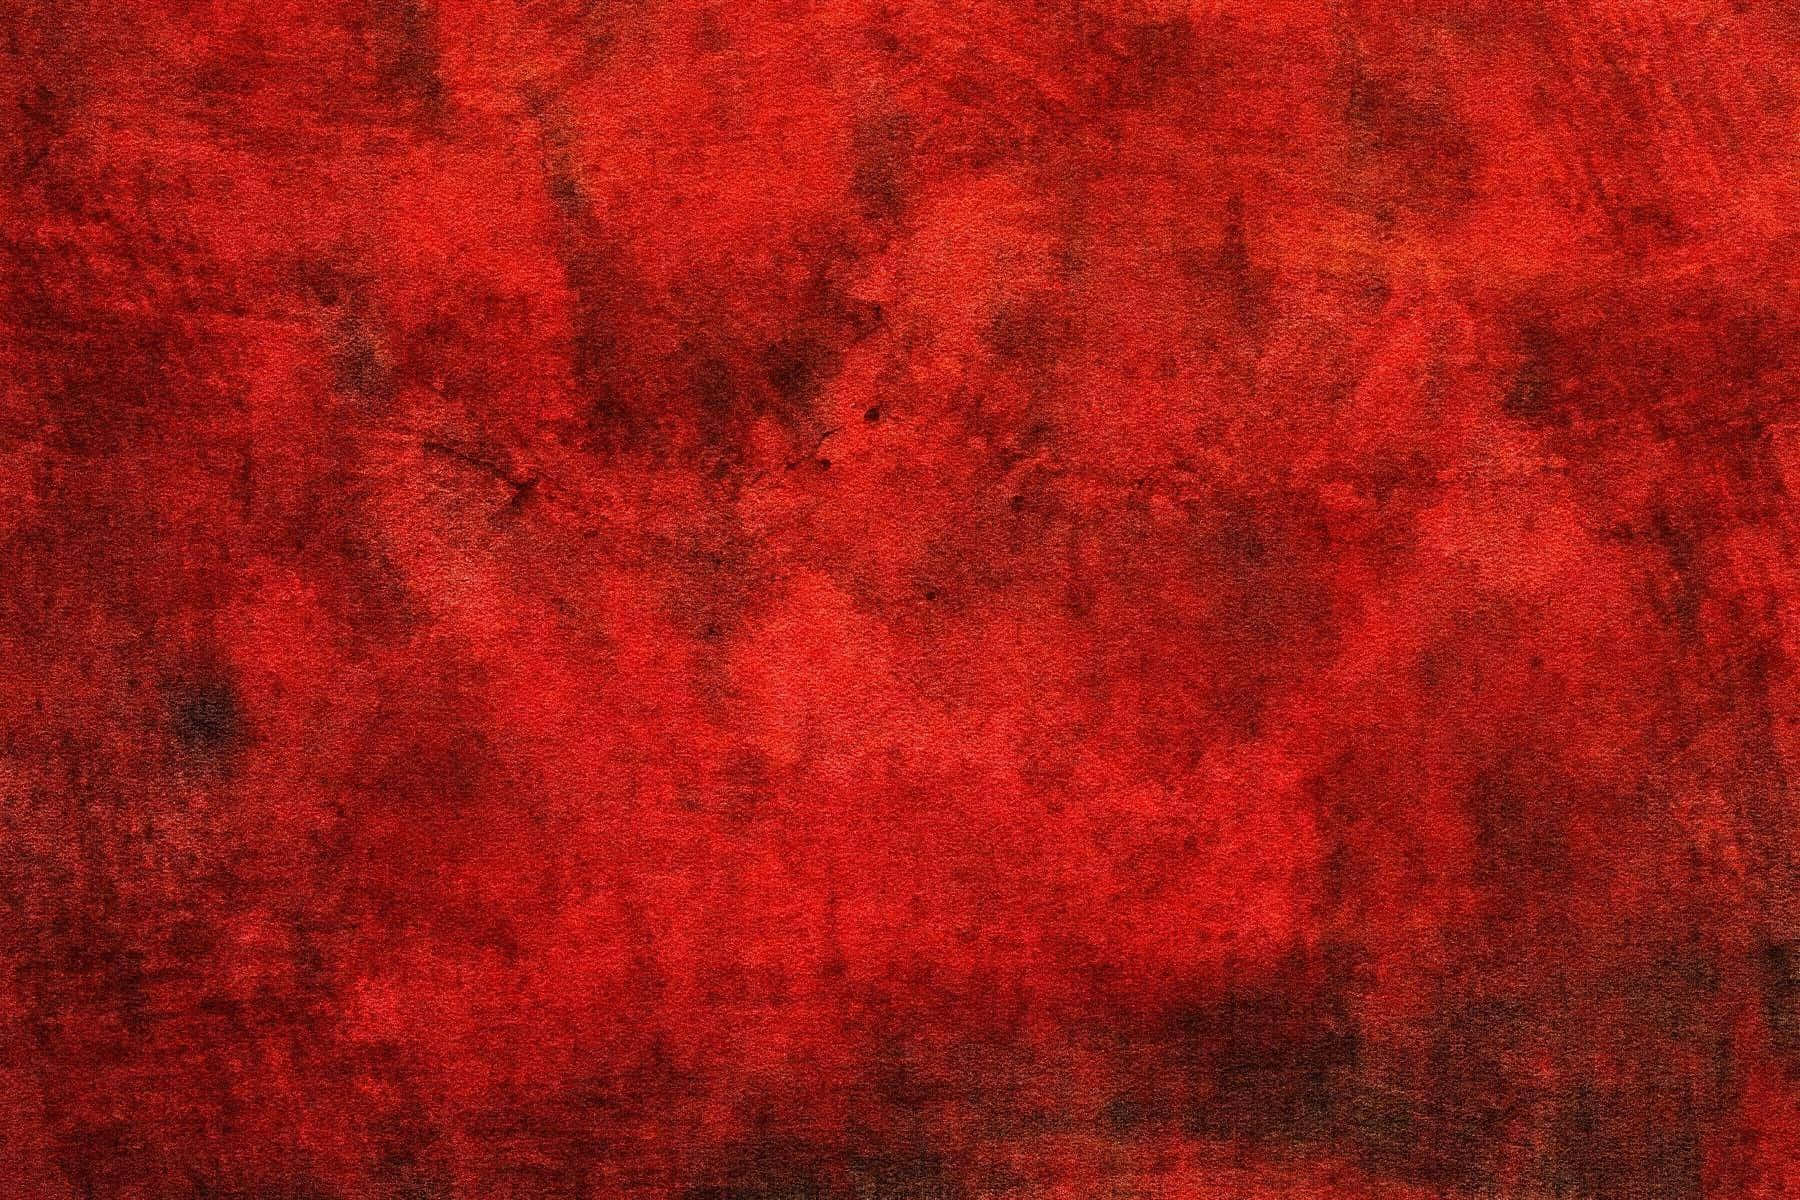 Imagende Pintura Abstracta Con Textura Roja